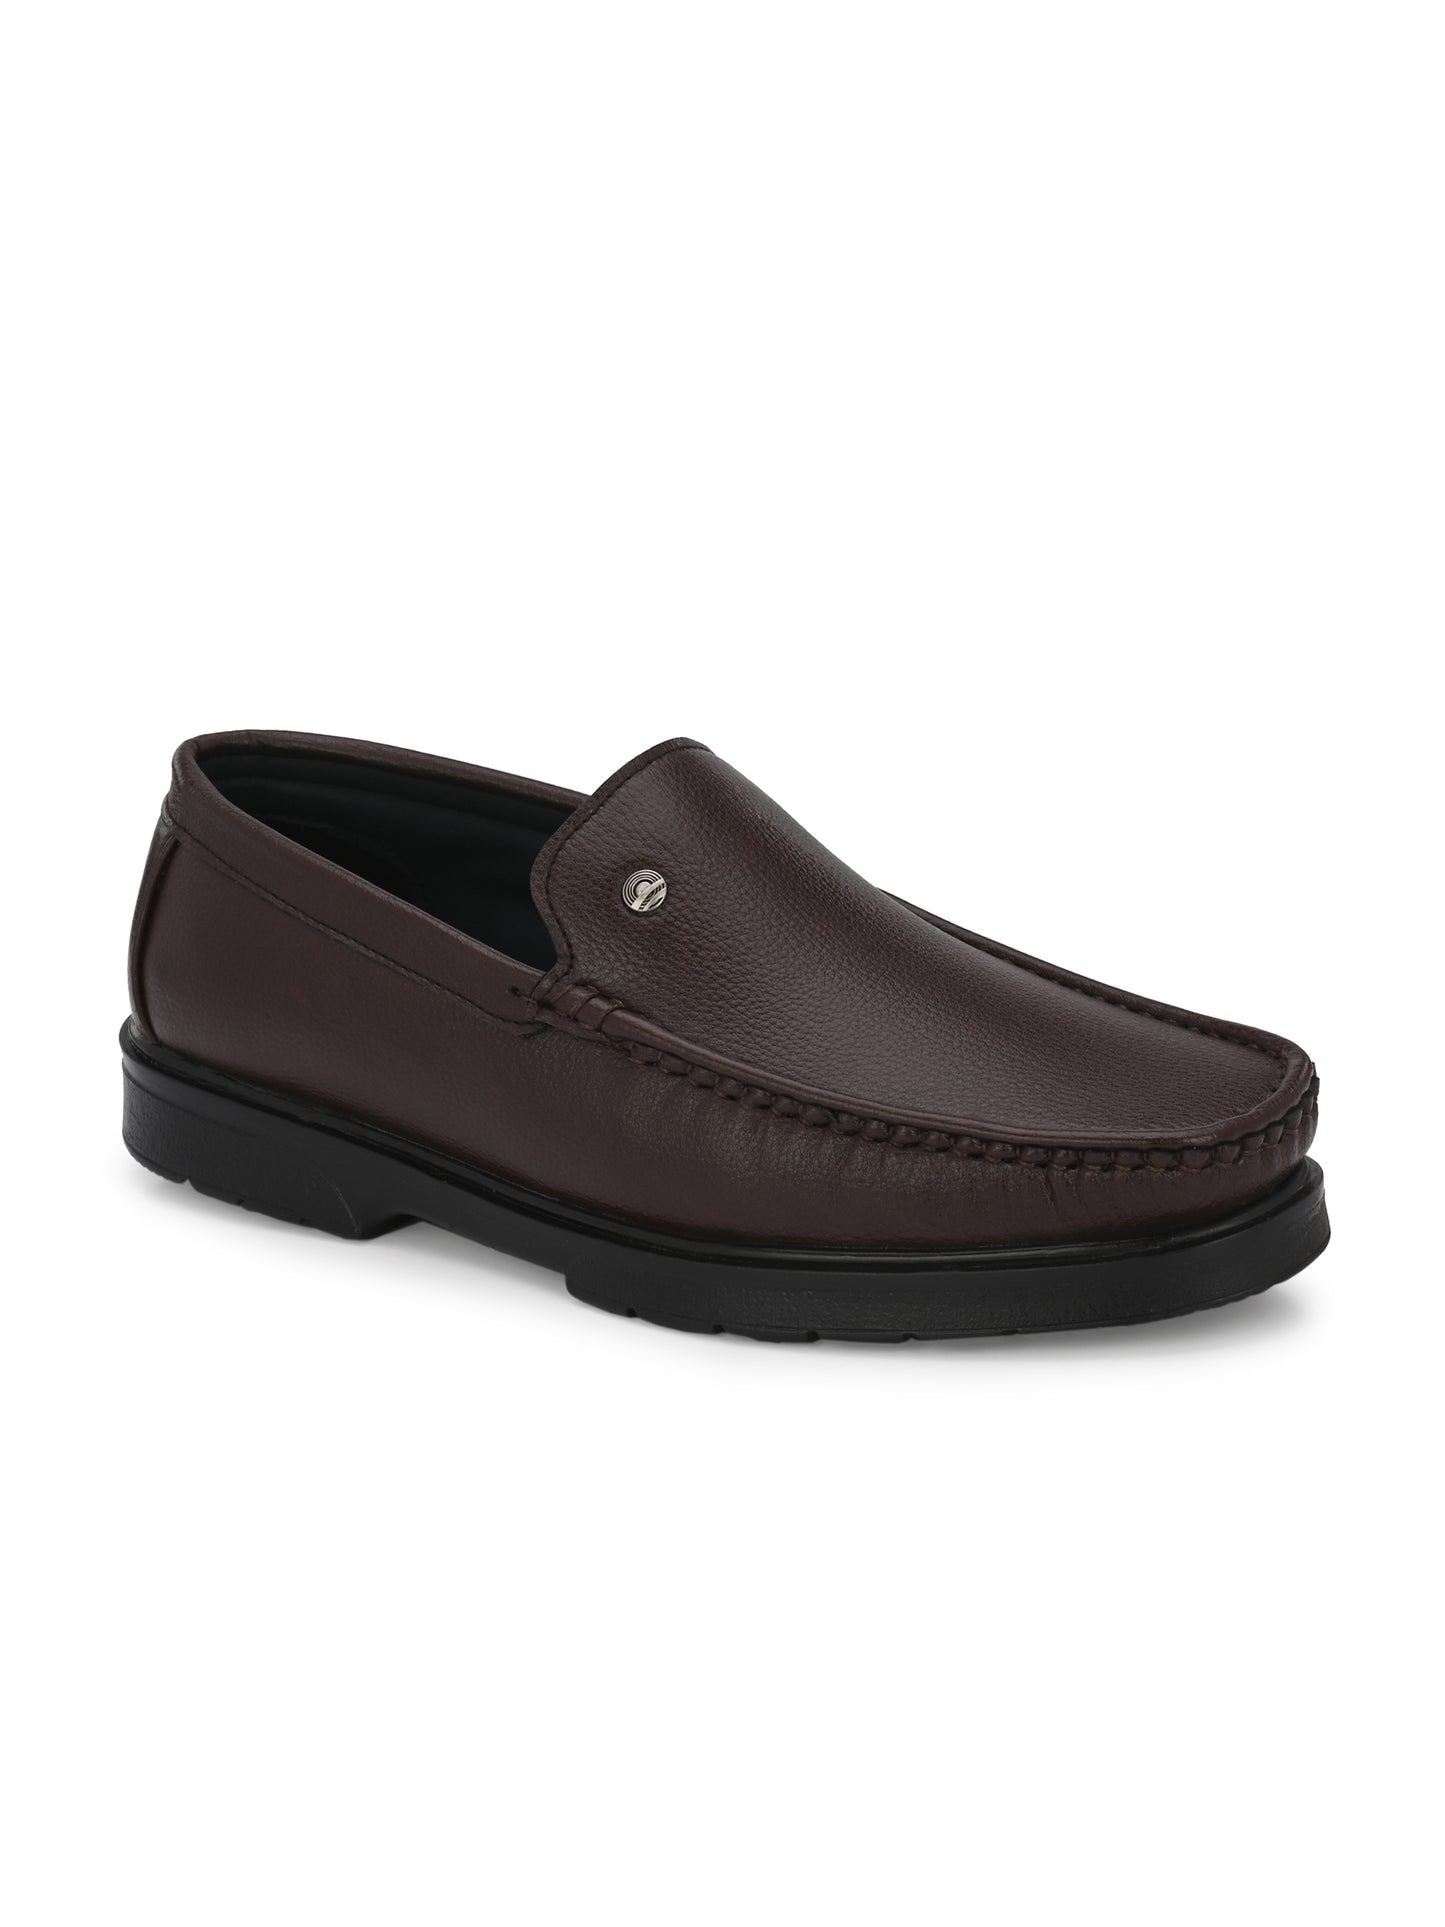 Guava Men's Brown Slip On Semi Formal Shoes (GV15JA825)